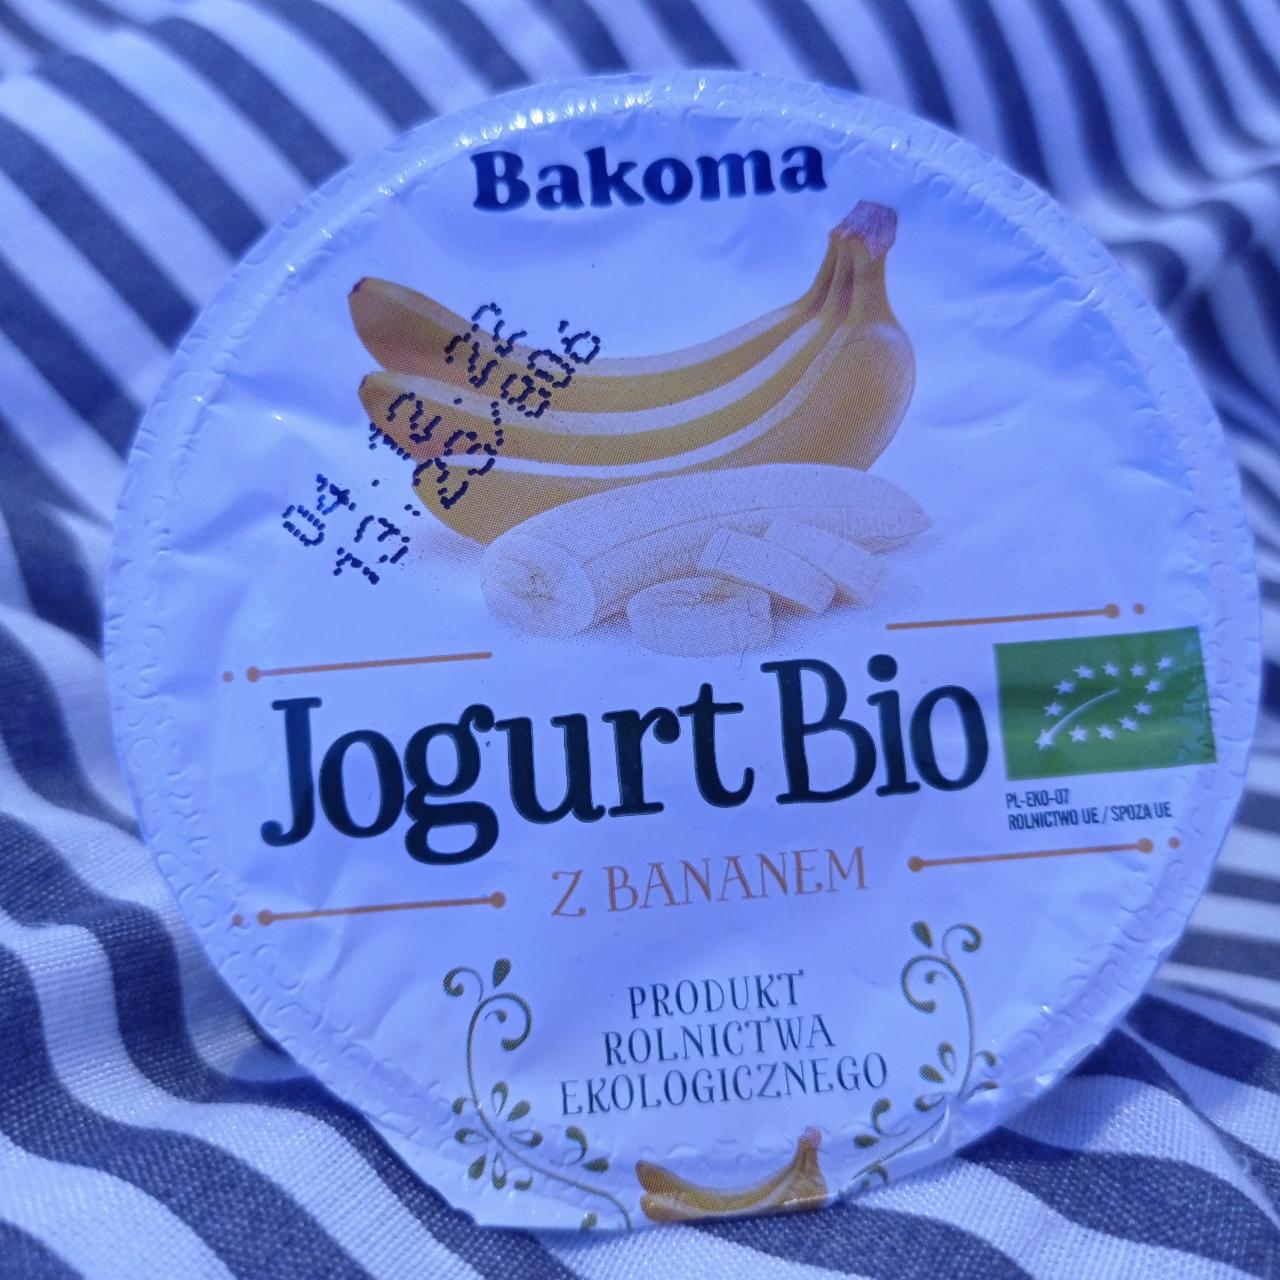 Фото - Біо йогурт з бананом Bakoma